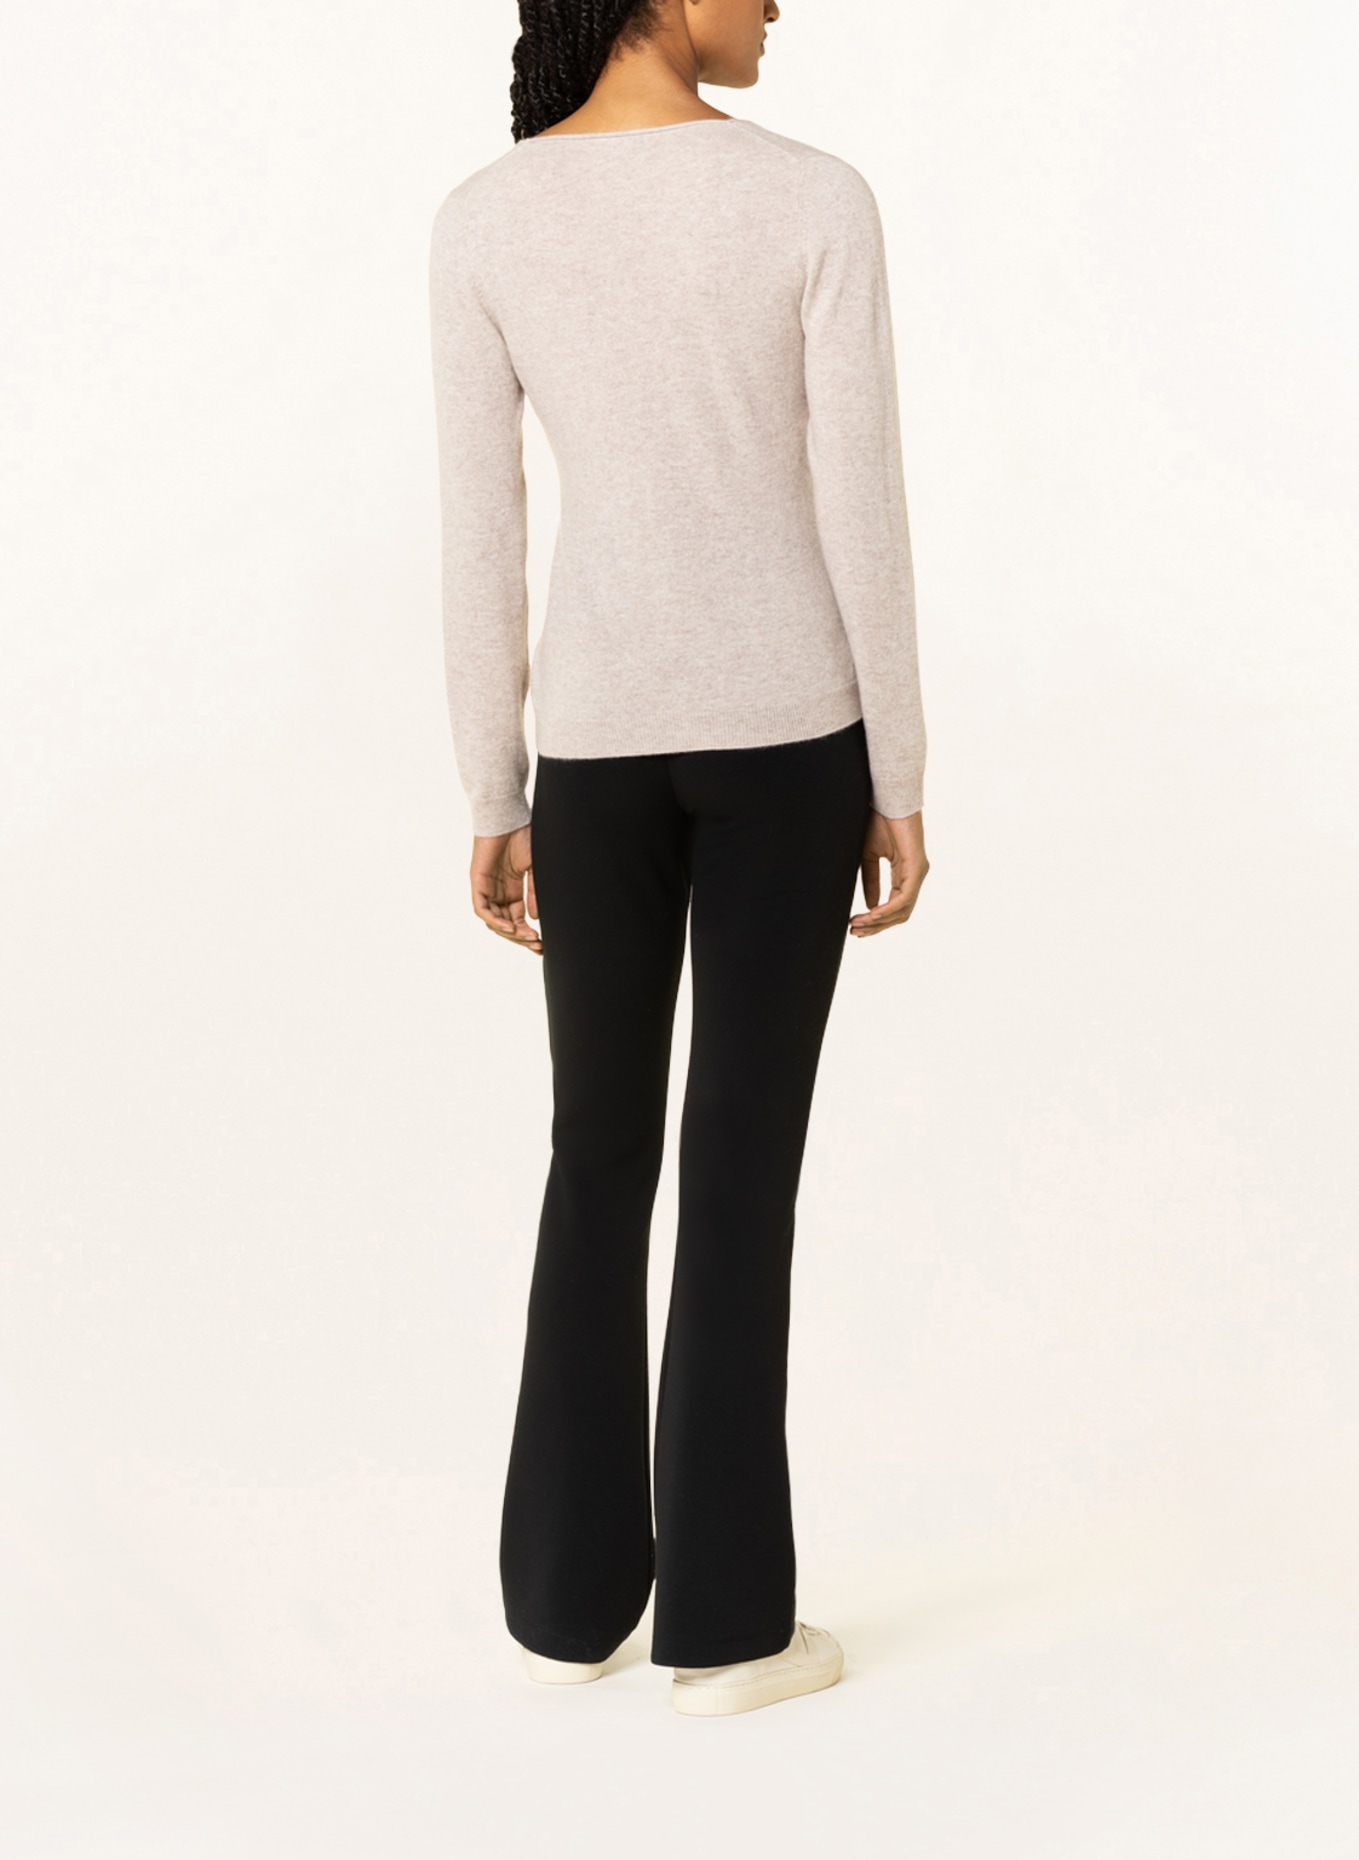 REPEAT Cashmere-Pullover, Farbe: CREME (Bild 3)